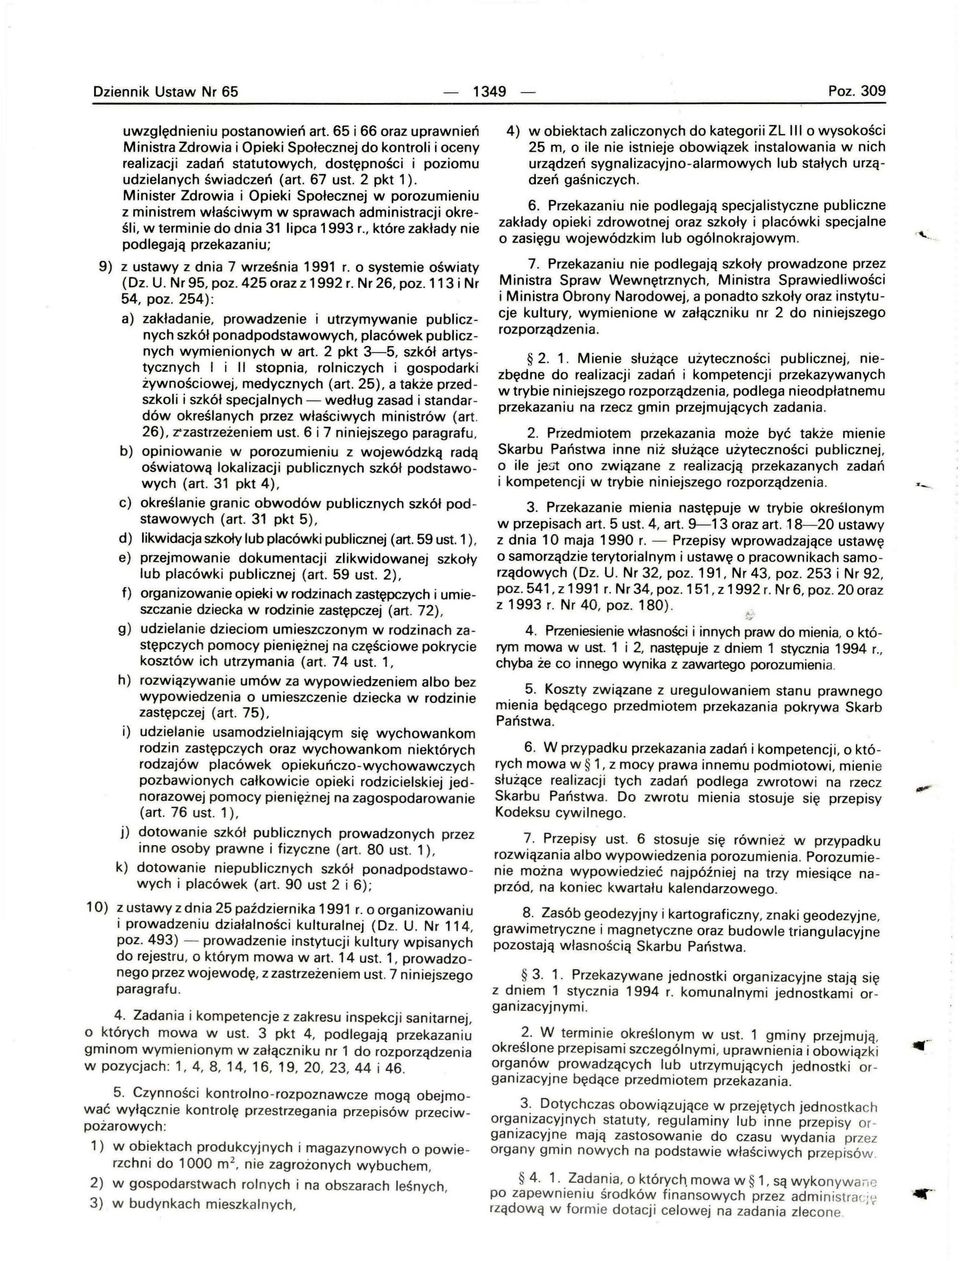 Minister Zdrowia i Opieki Społecznej w porozumieniu z ministrem właściwym w sprawach administracji określi, w terminie do dnia 31 lipca 1993 r.